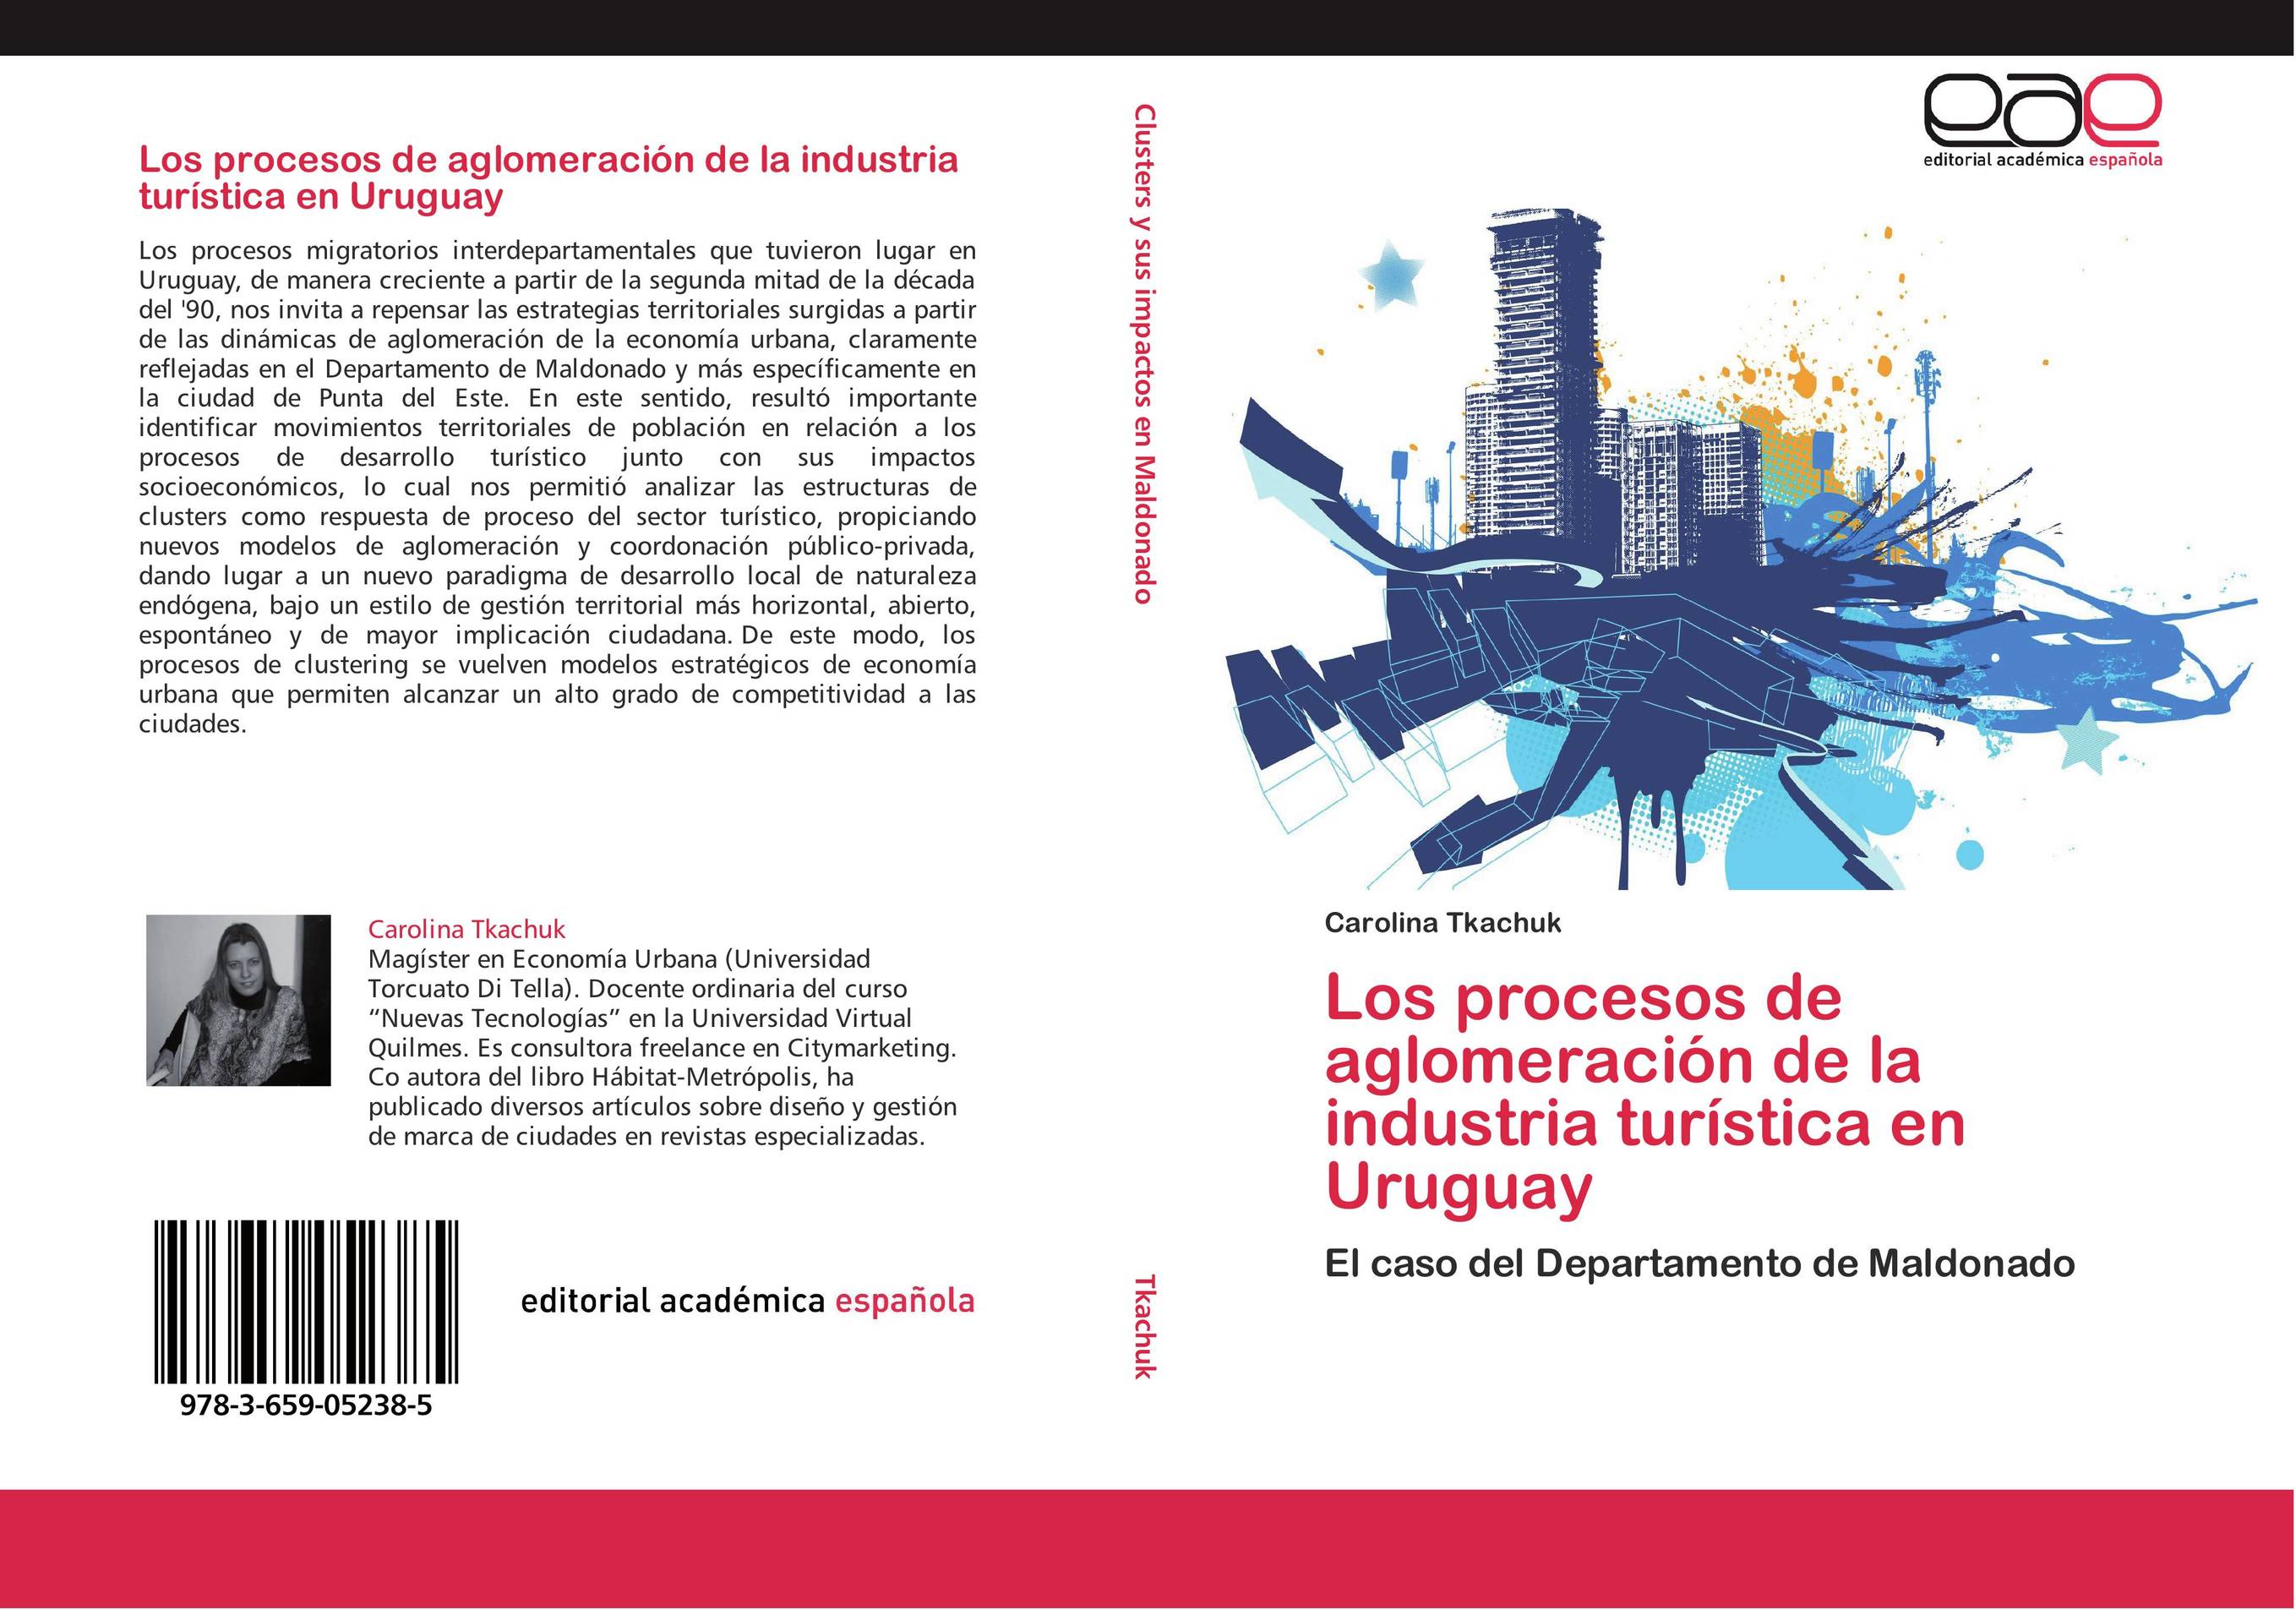 Los procesos de aglomeración de la industria turística en Uruguay